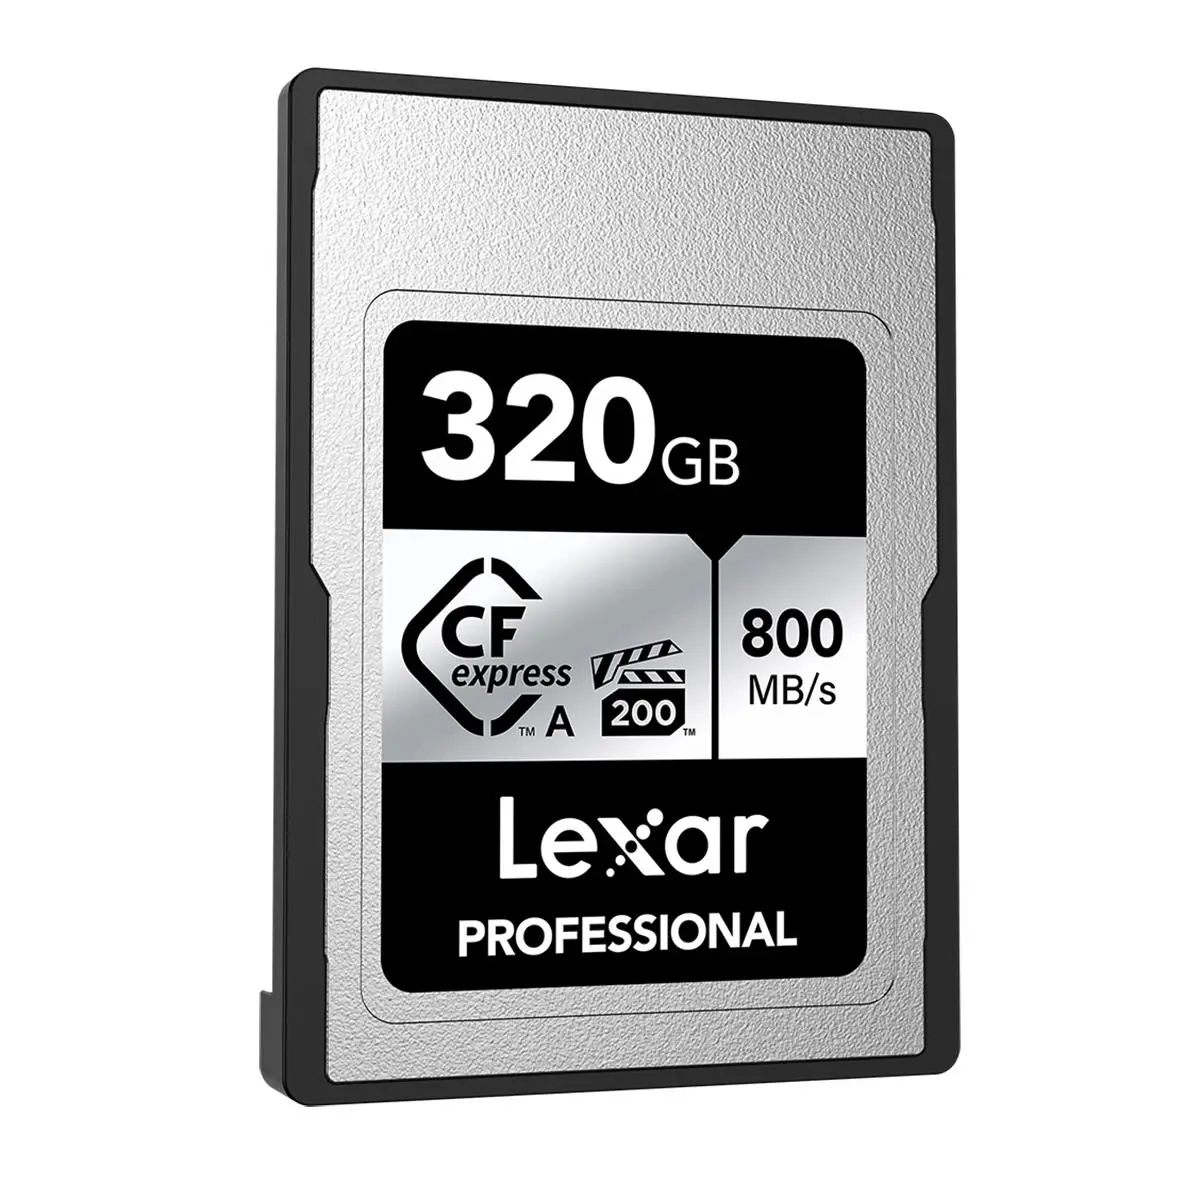 Lexar CFexpress Type A Silver Series: Kartu Memori Super Cepat yang Affordable dari Lexar.